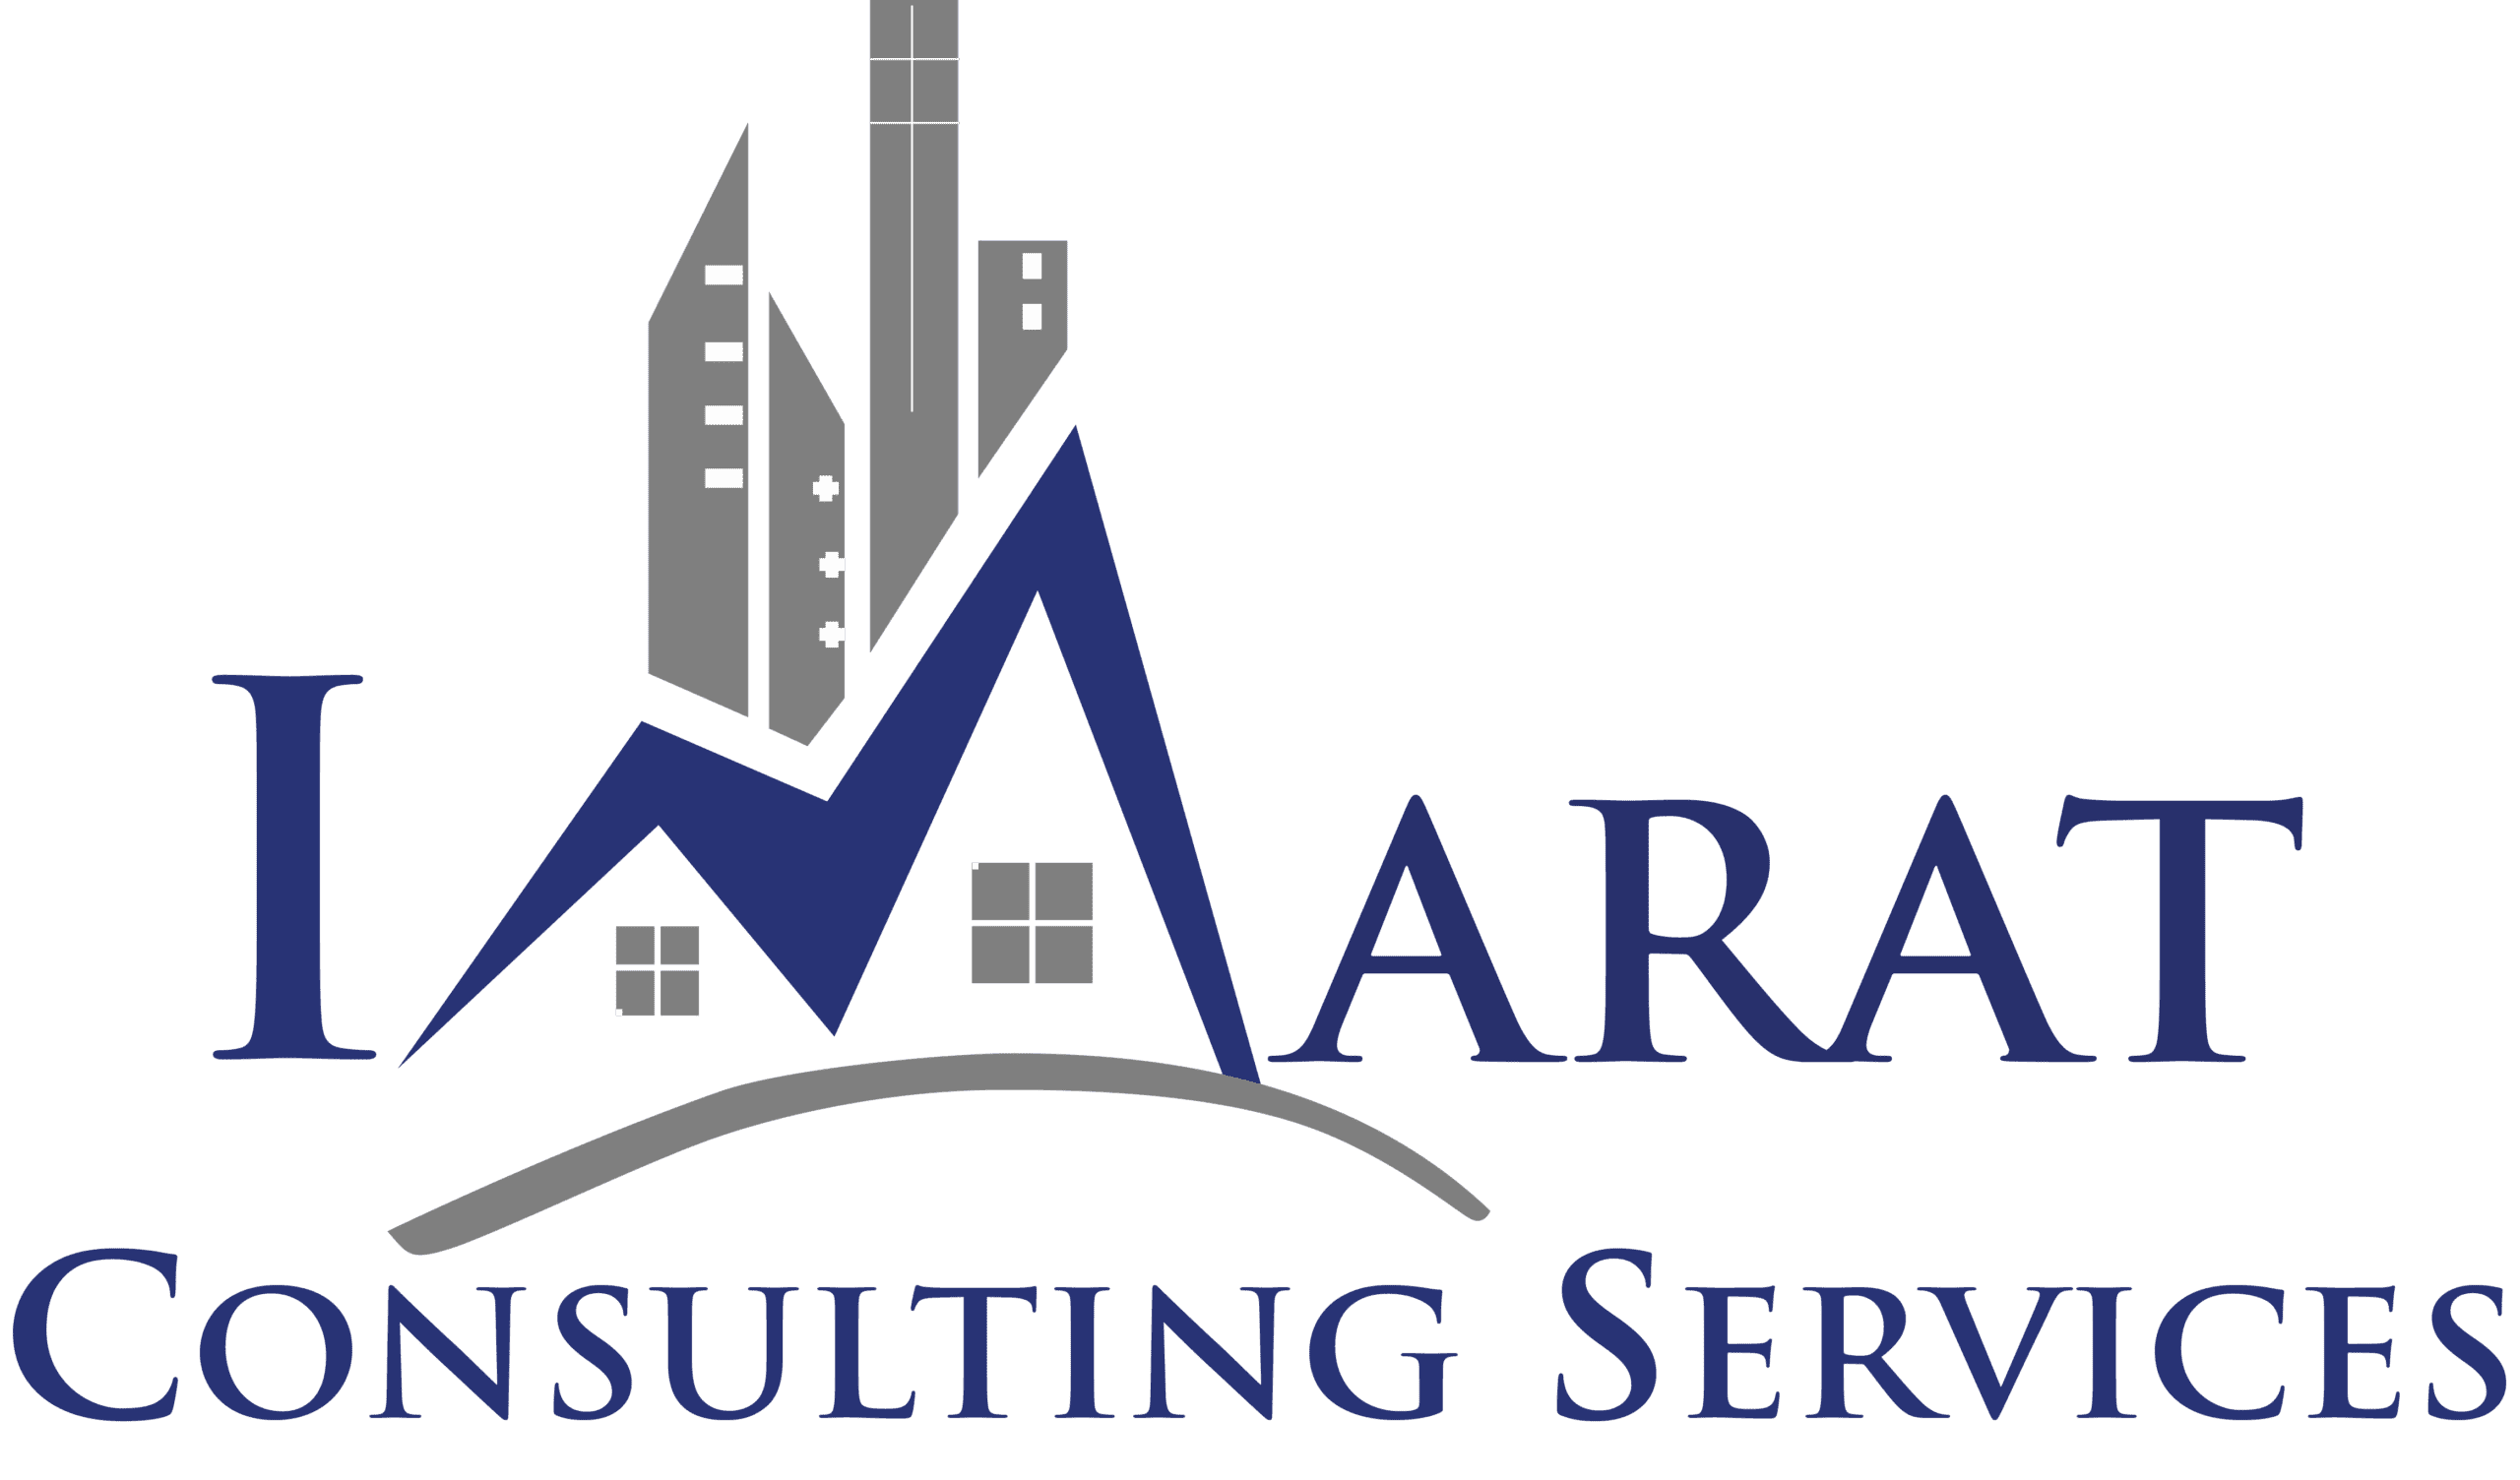 Imarat Consulting Services - Designing The Future Civil Engineers